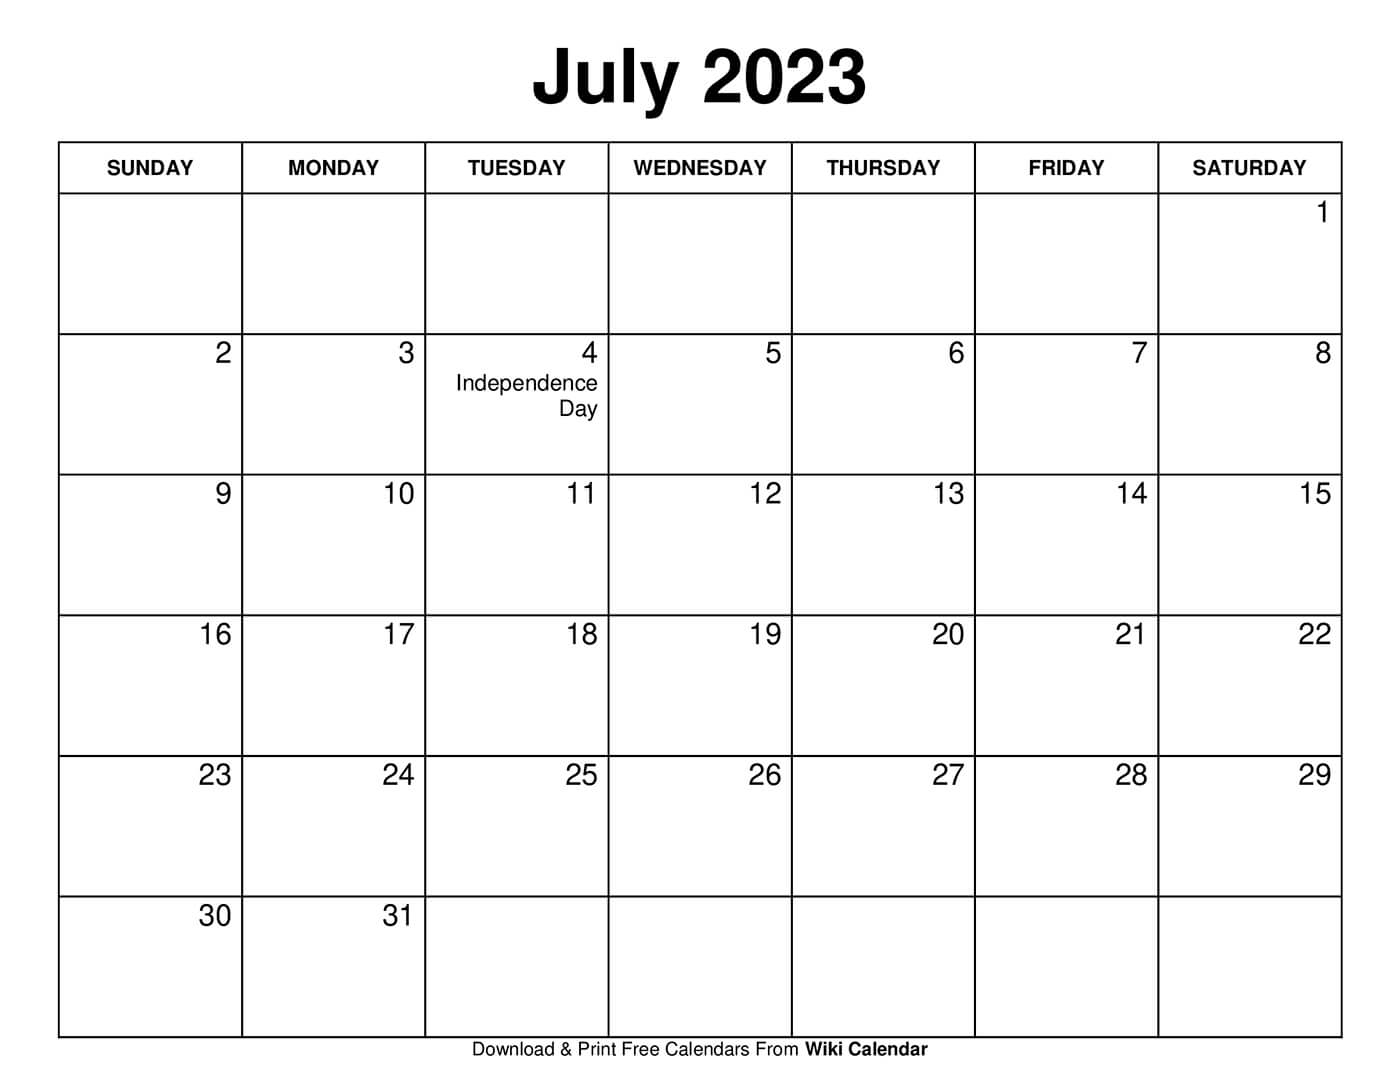 free-windows-calendar-template-2023-get-calendar-2023-update